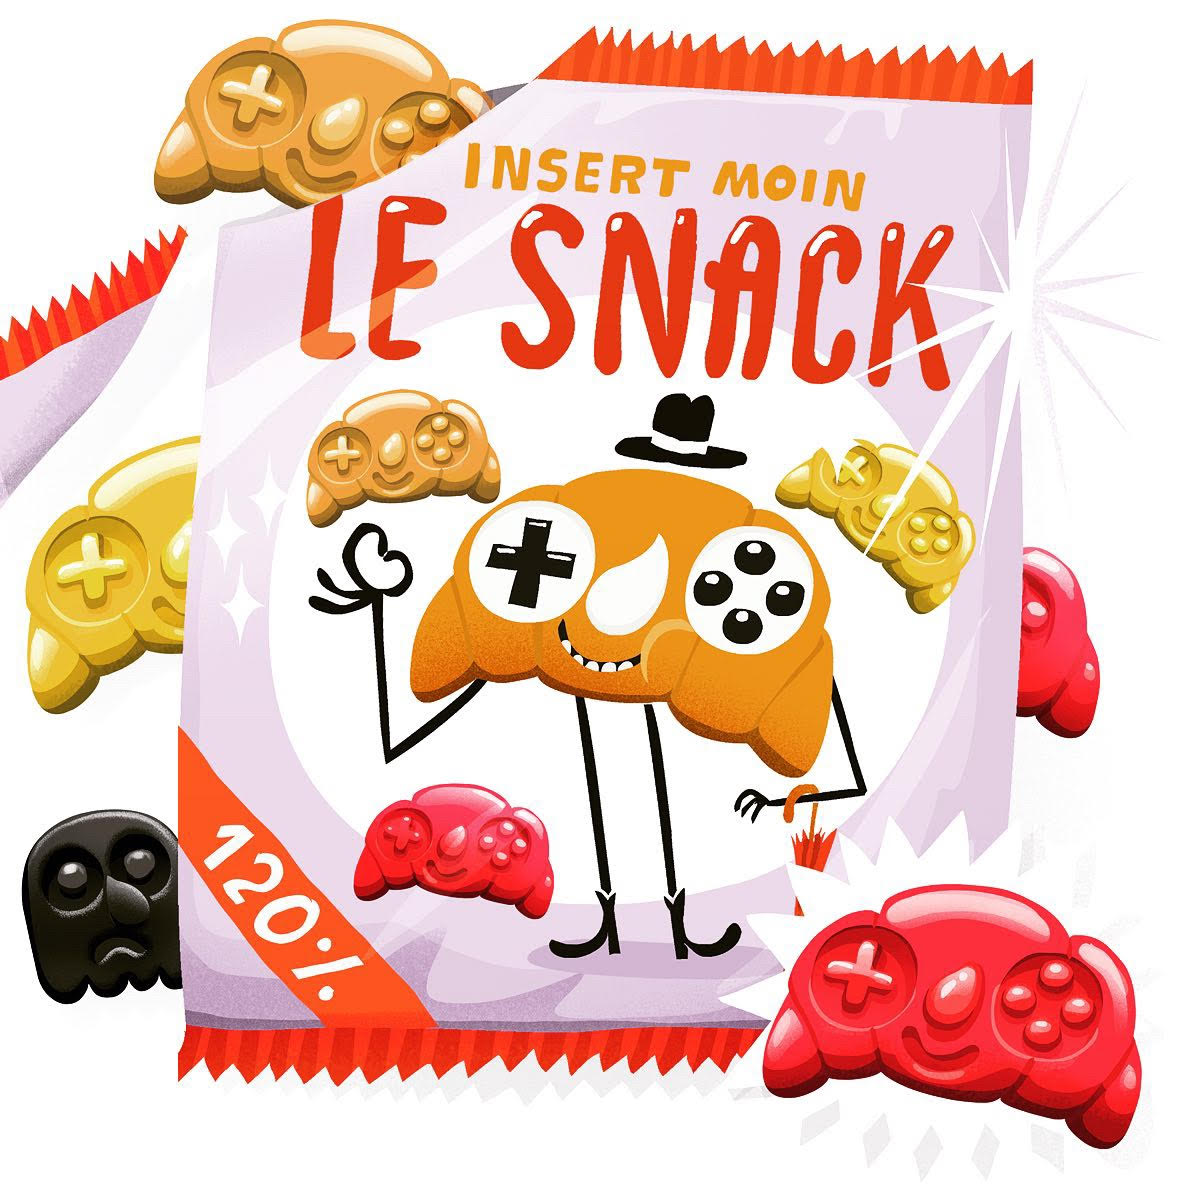 Le Snack: Die besten Spiele für PlayStation VR 2 (PSVR2)